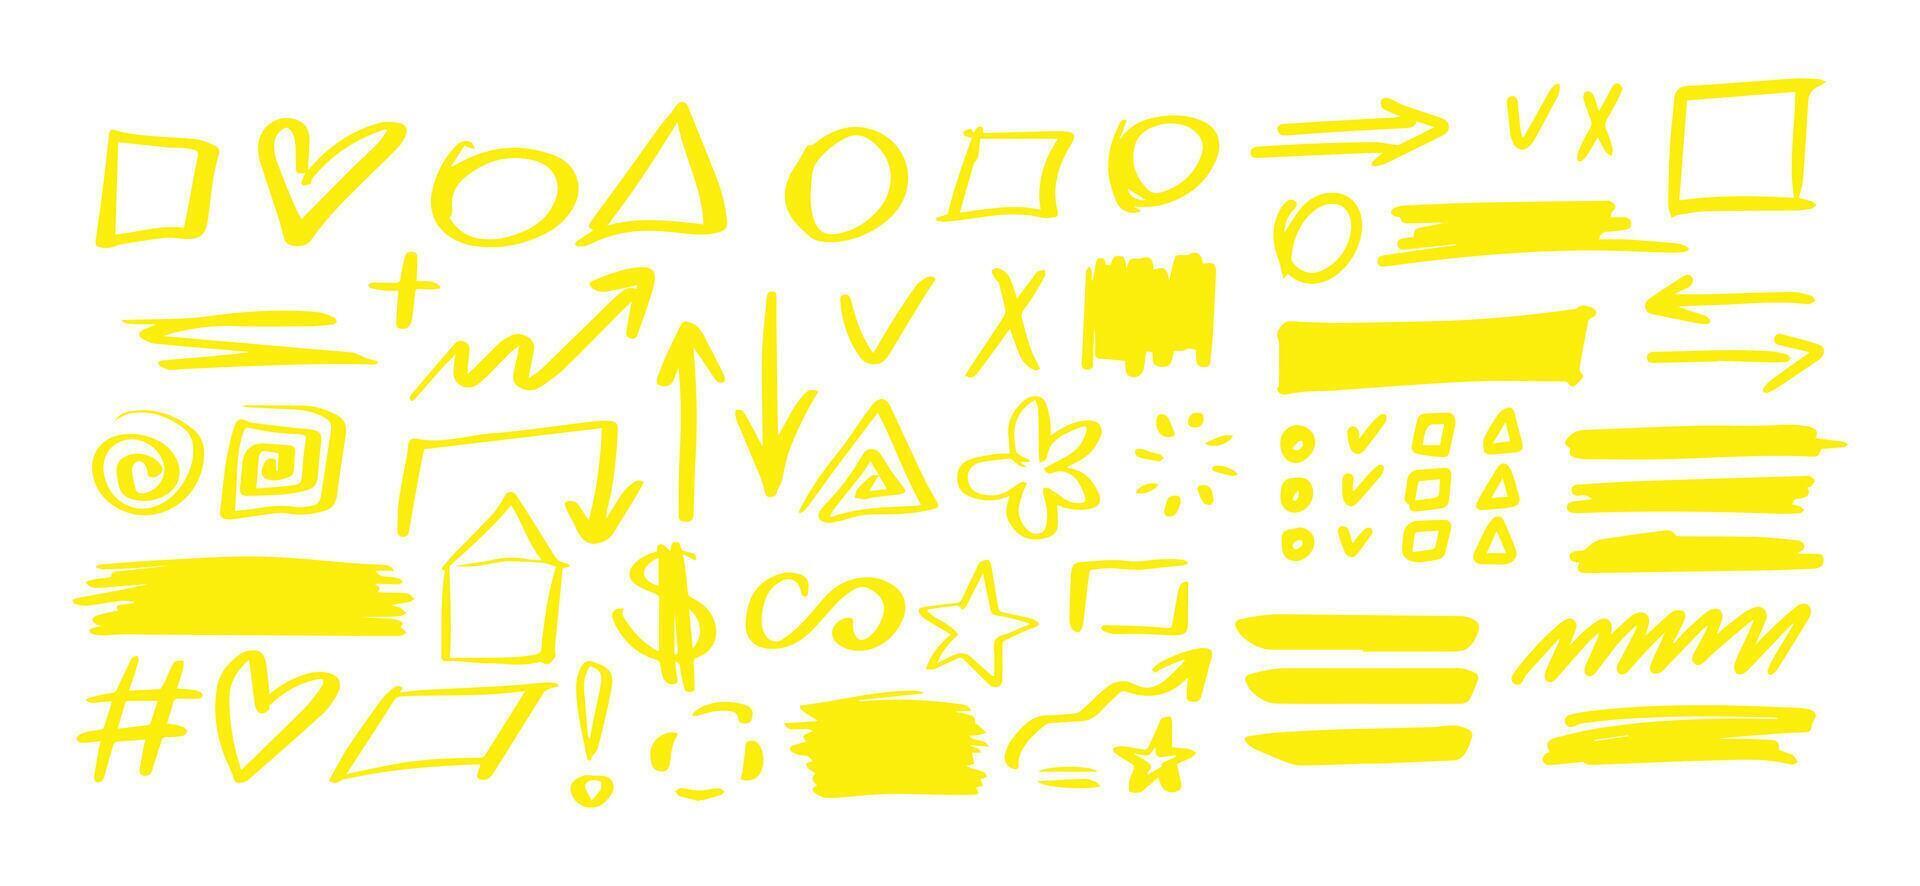 dibujado a mano formas y líneas - real resaltadores amarillo vector conjunto aislado en blanco antecedentes. utilizar para nota, ilustraciones y decoraciones textos, artículos